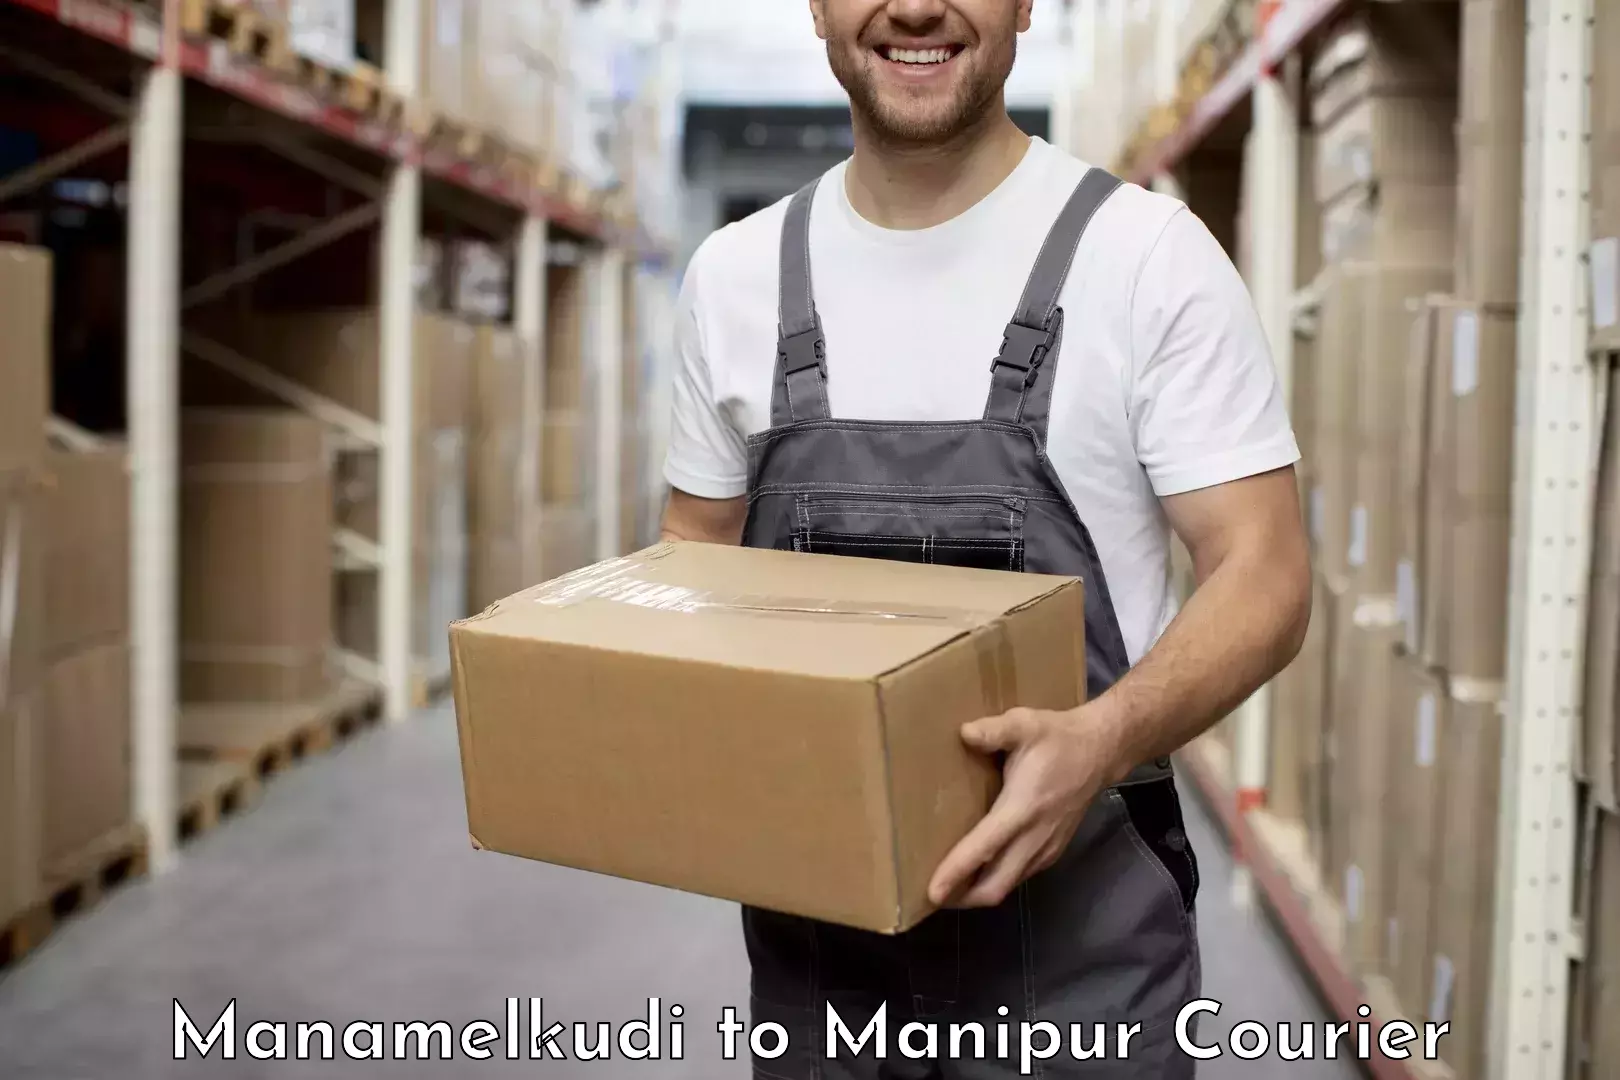 Quick courier services in Manamelkudi to Senapati